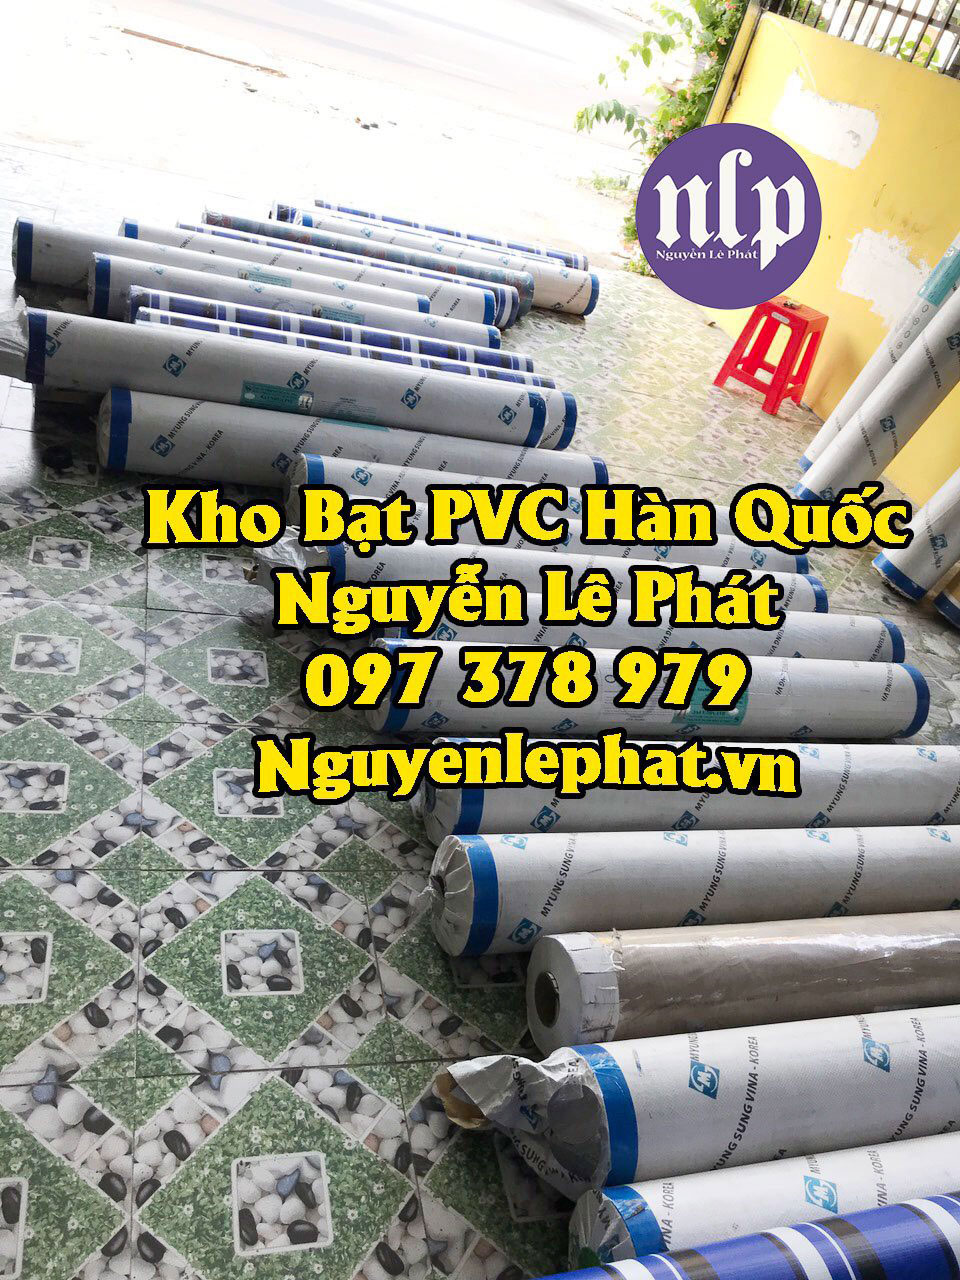 Kho bạt Nguyễn Lê Phát